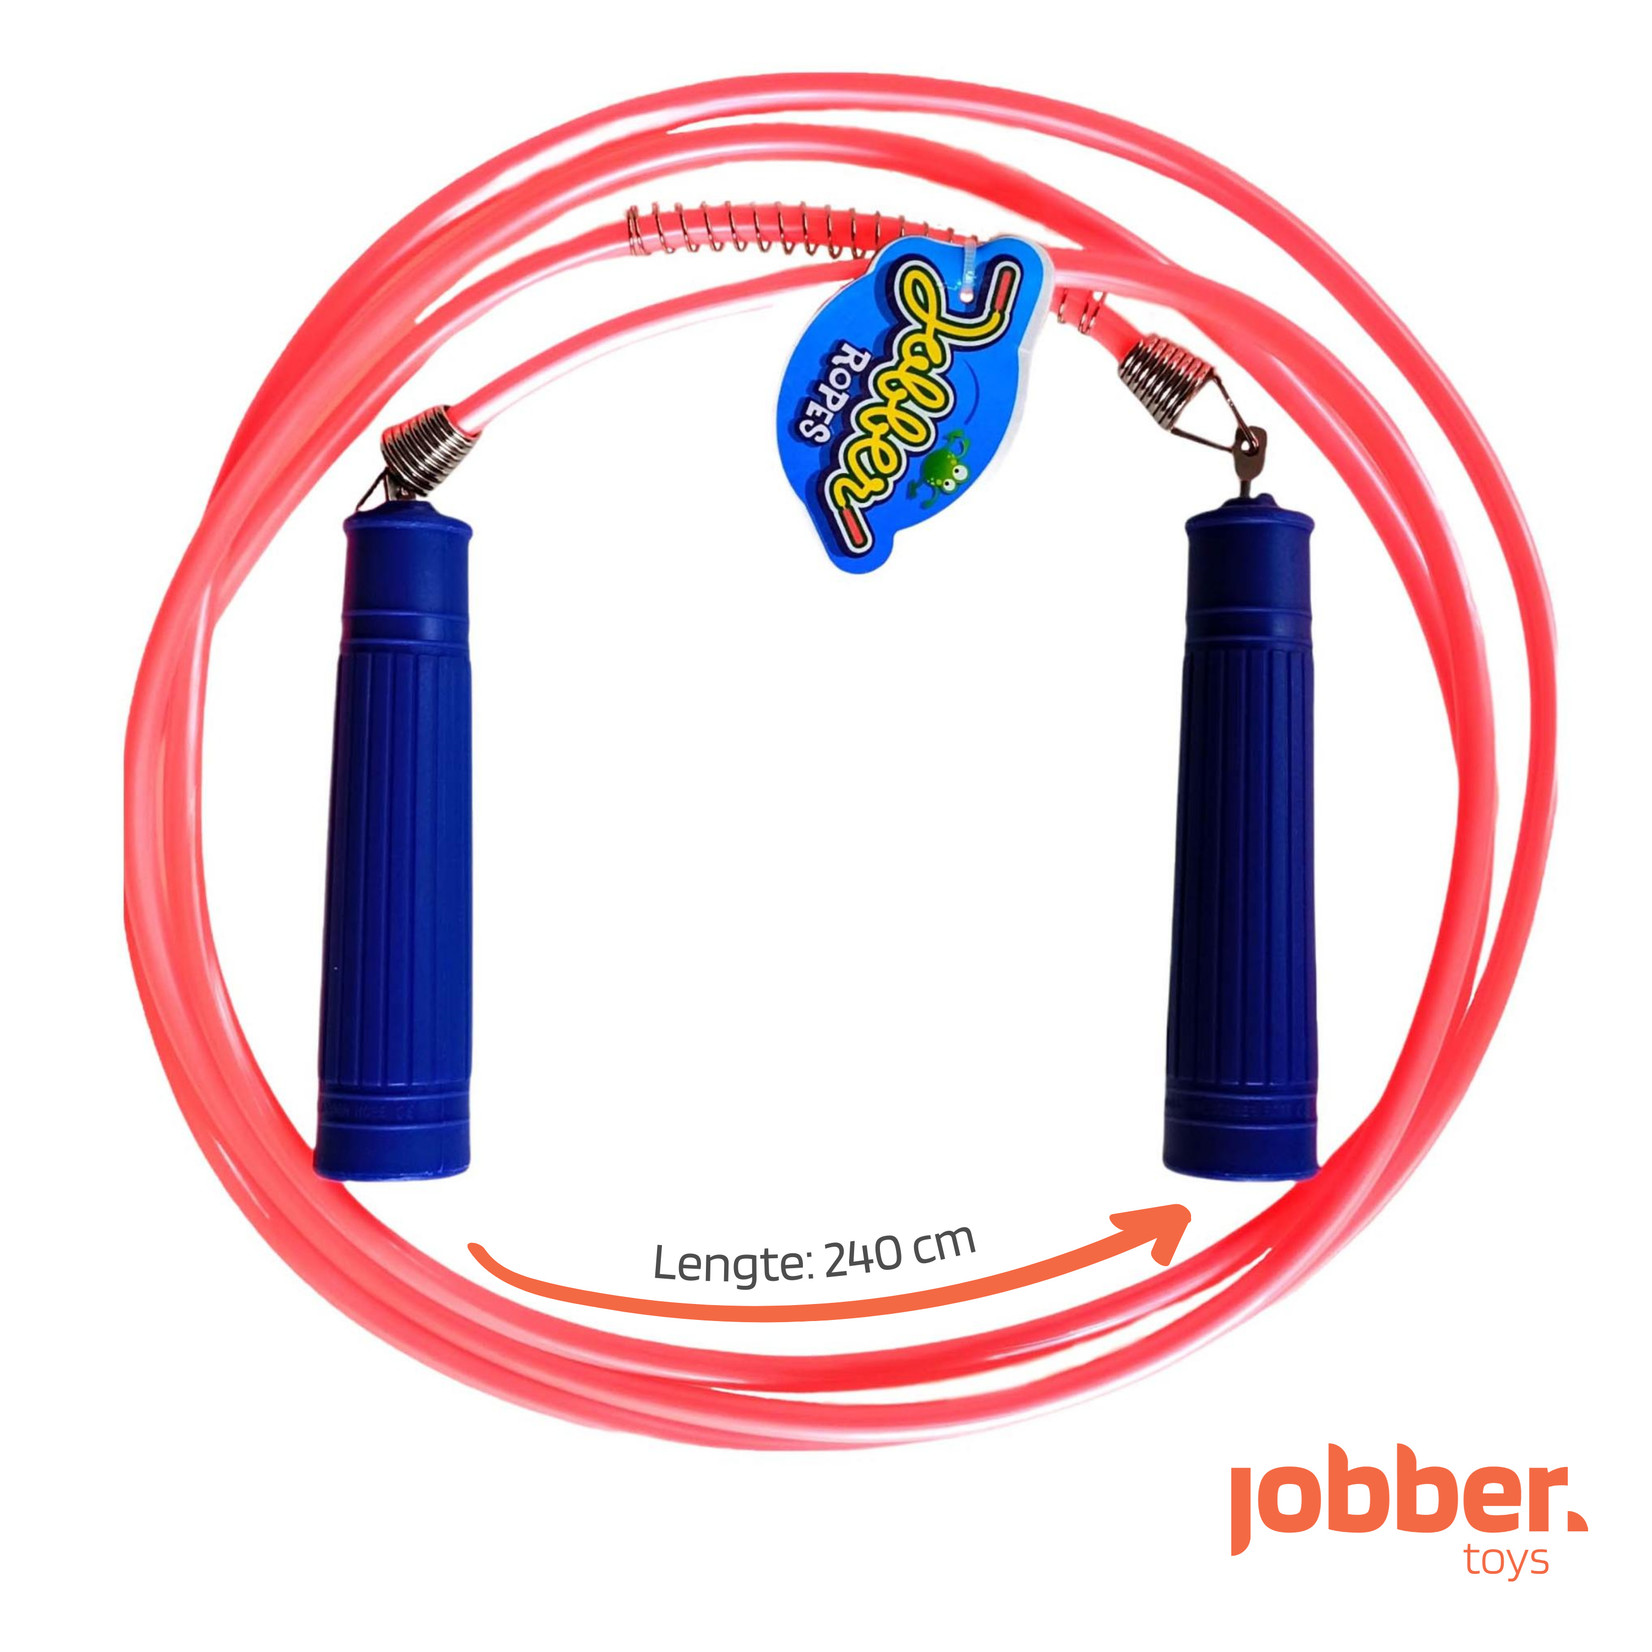 Jobber Ropes kids Jobber Ropes – Kinder springtouw Deluxe (roze)